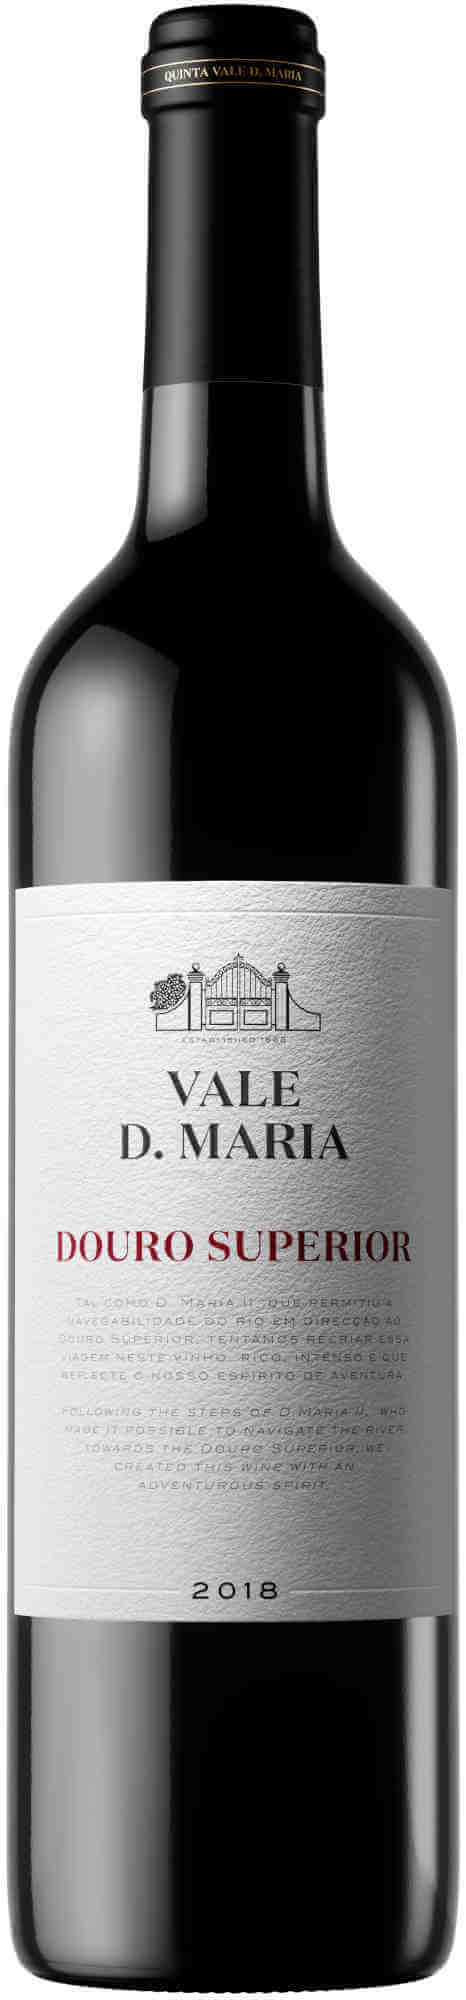 Vale-D-Maria-Douro-Superior-2018